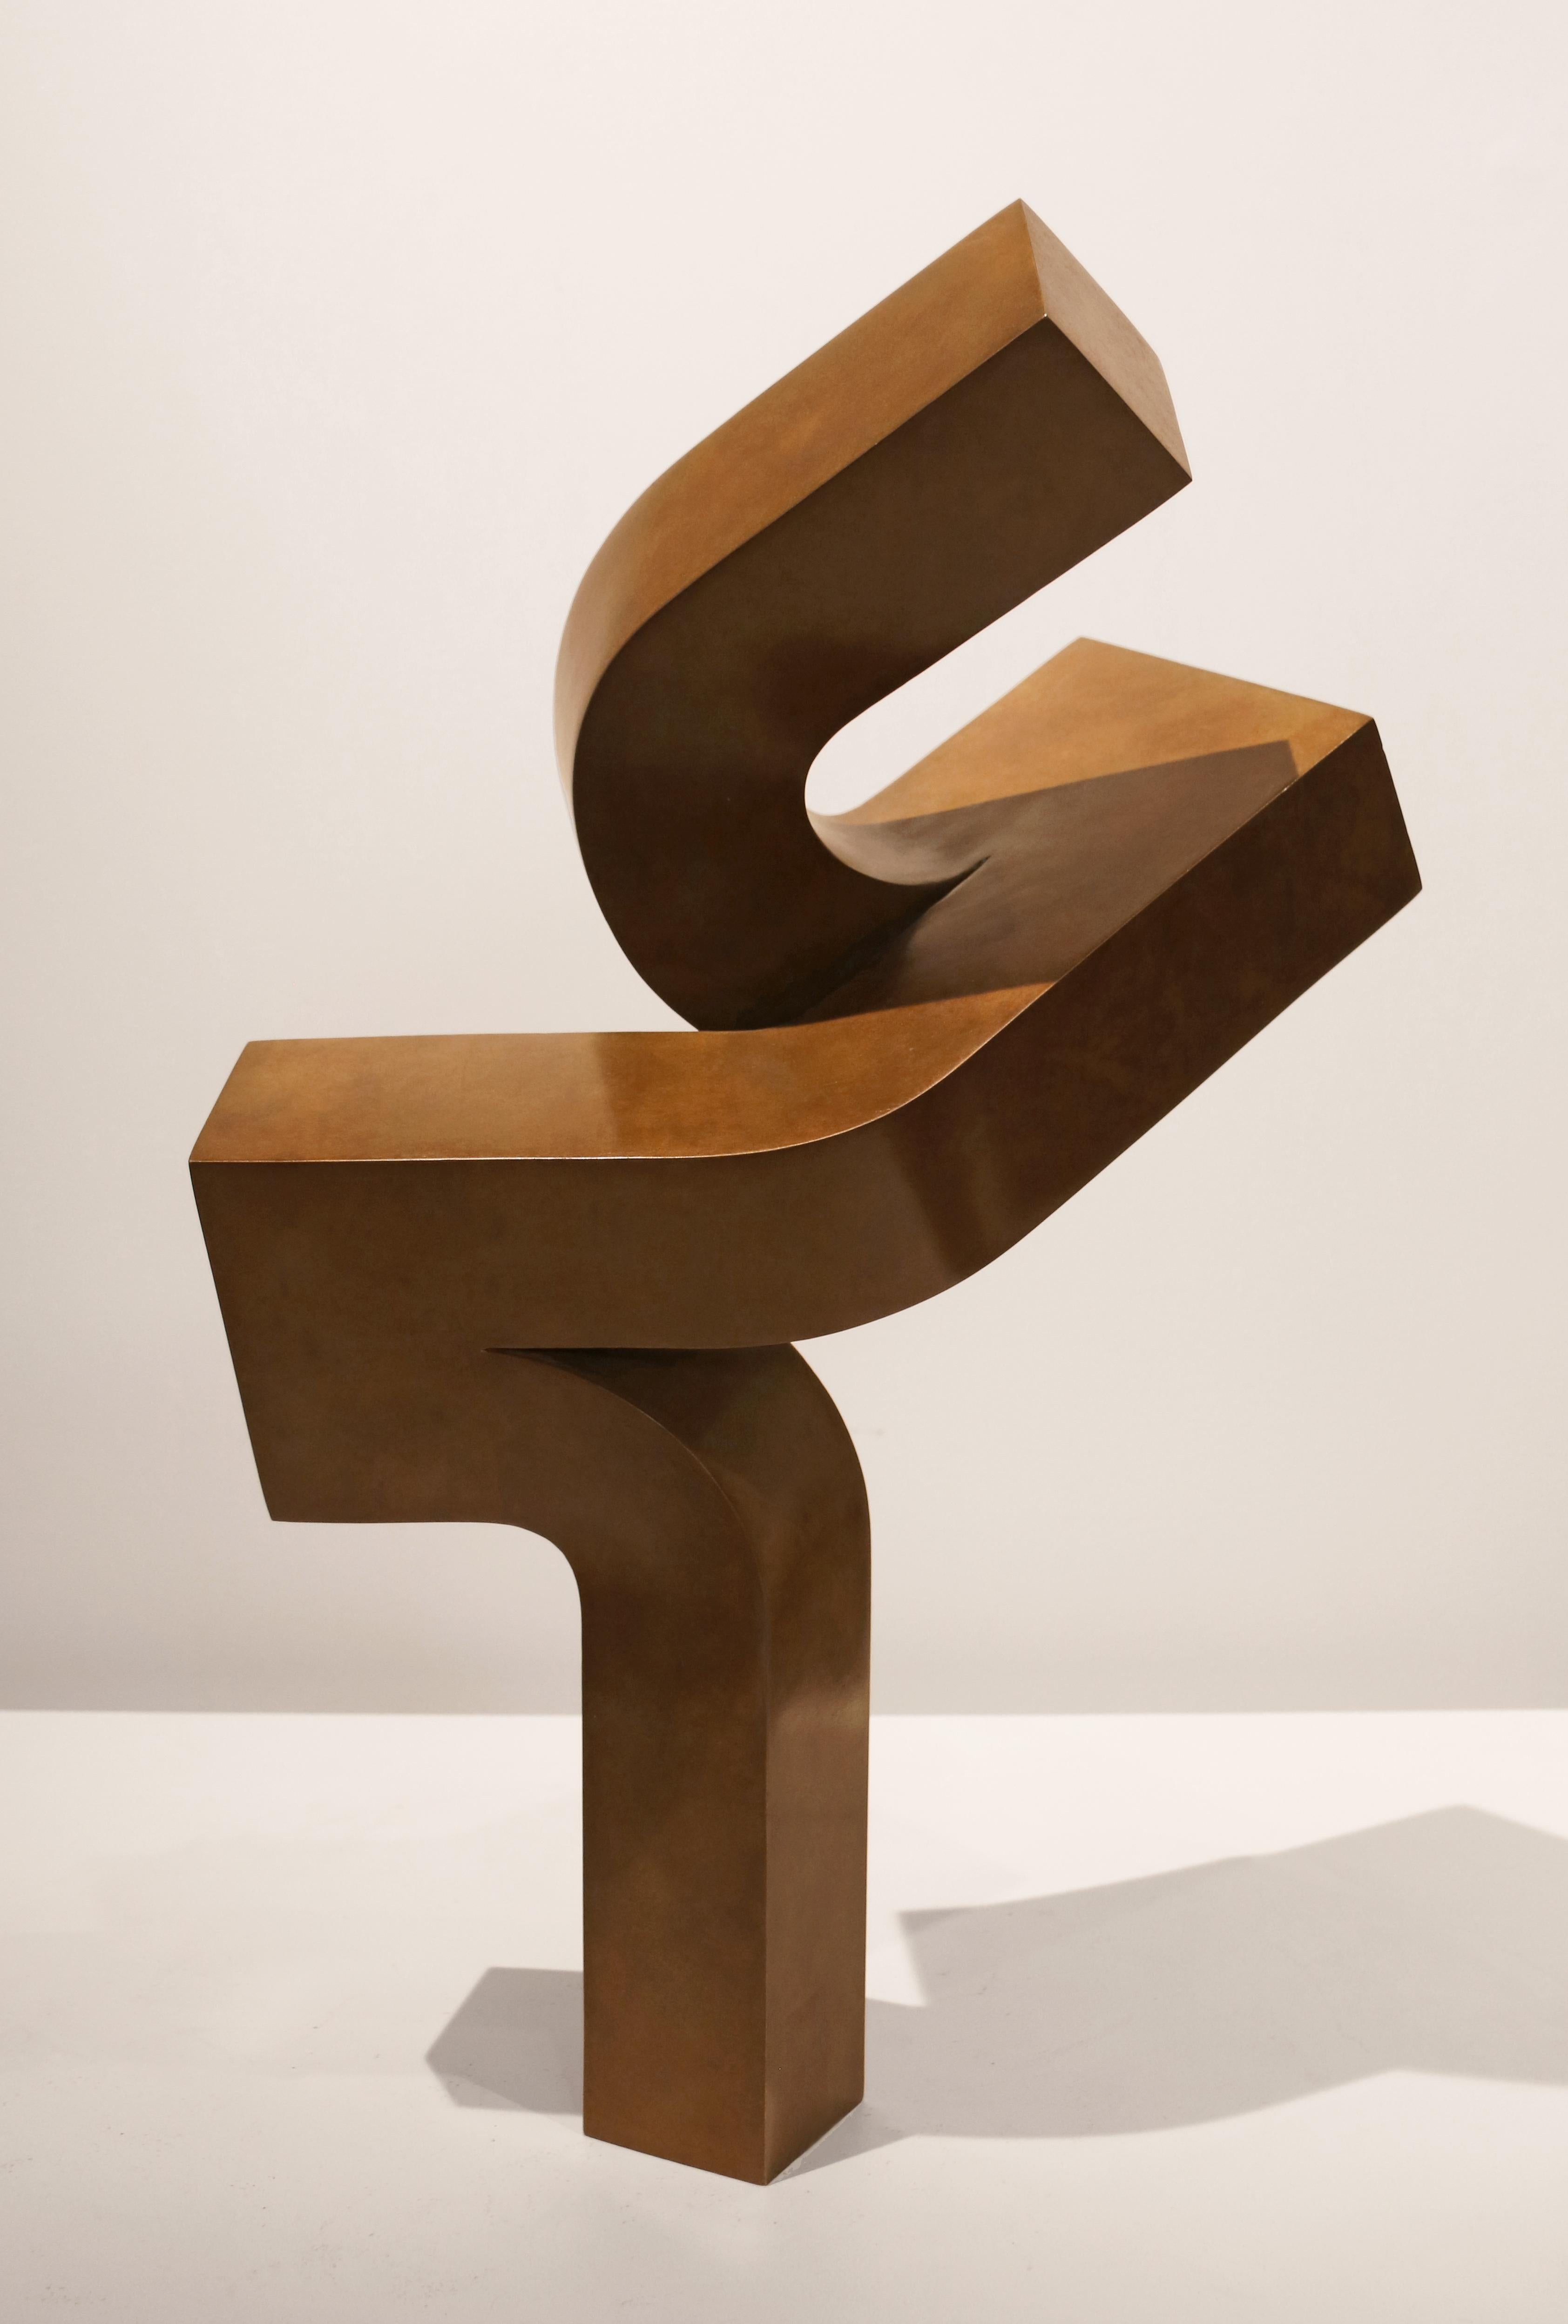 Upsurge ist eine minimalistische abstrakte Sockelskulptur aus Bronze, die  wurde 1989 entworfen und kann als ein Kunstwerk der Jahrhundertmitte betrachtet werden. Es ist mit Clement Meadmores "honigfarbener Wachspatina" versehen. Es handelt sich um